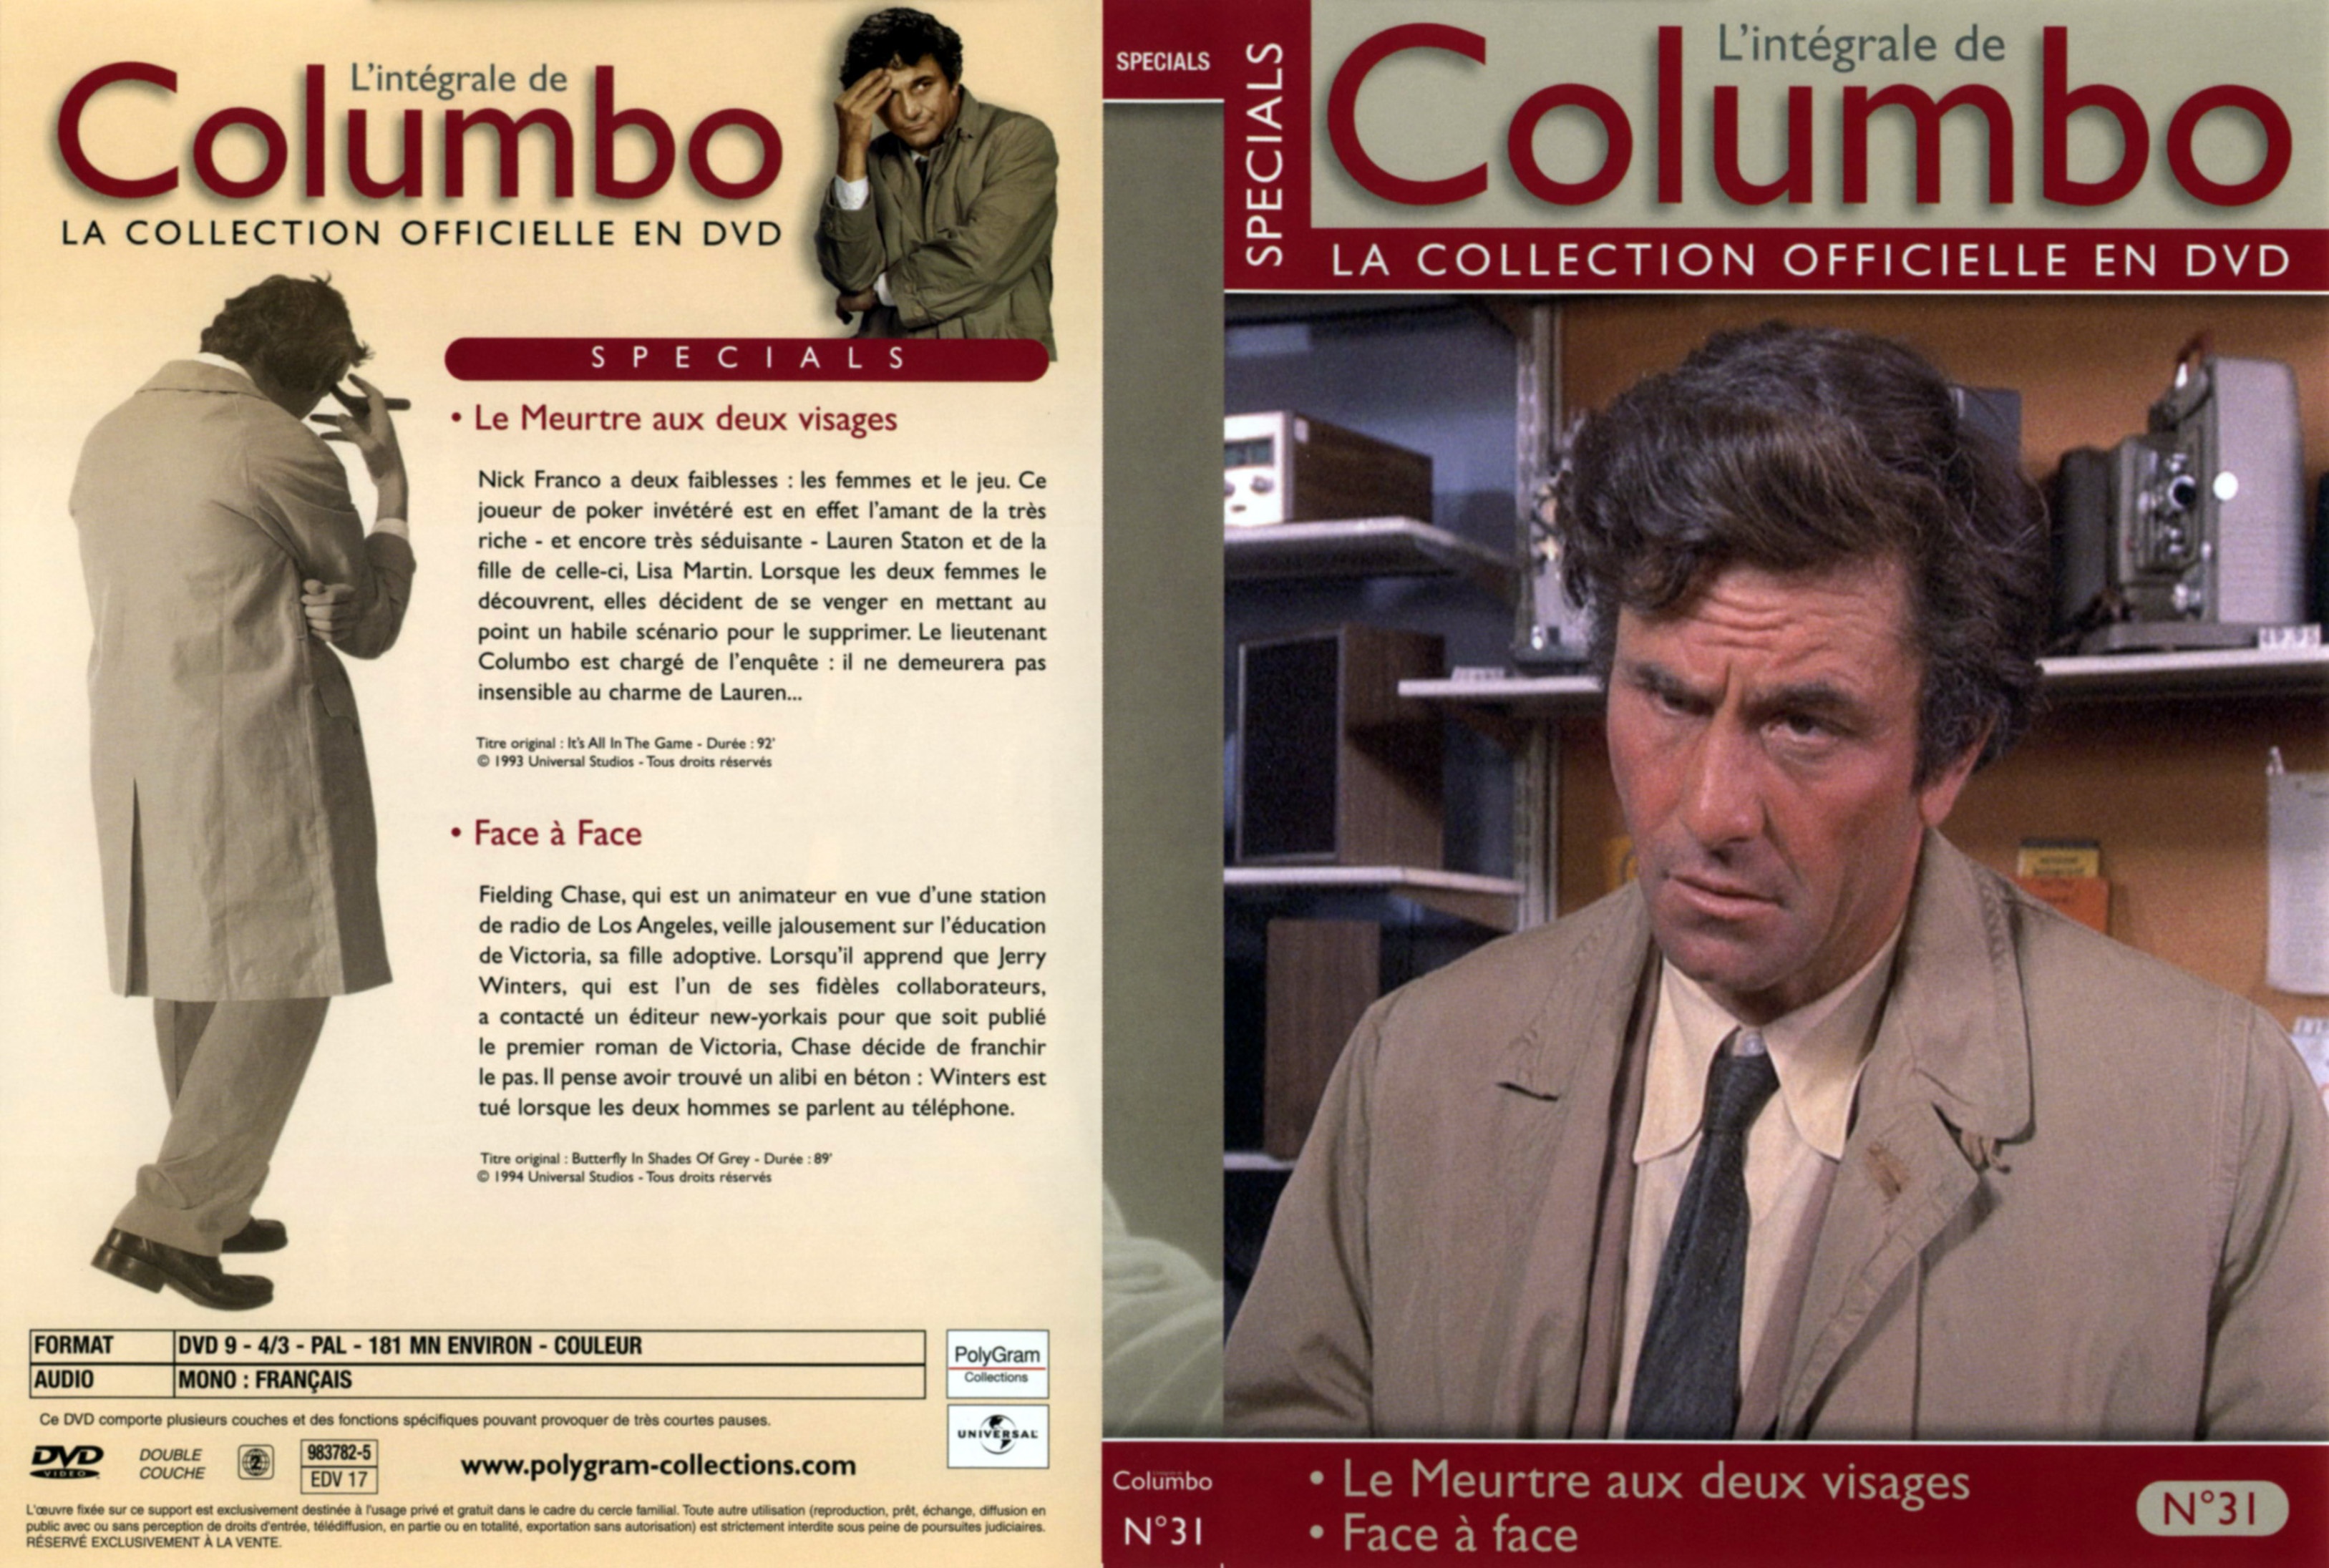 Jaquette DVD Columbo Specials vol 31